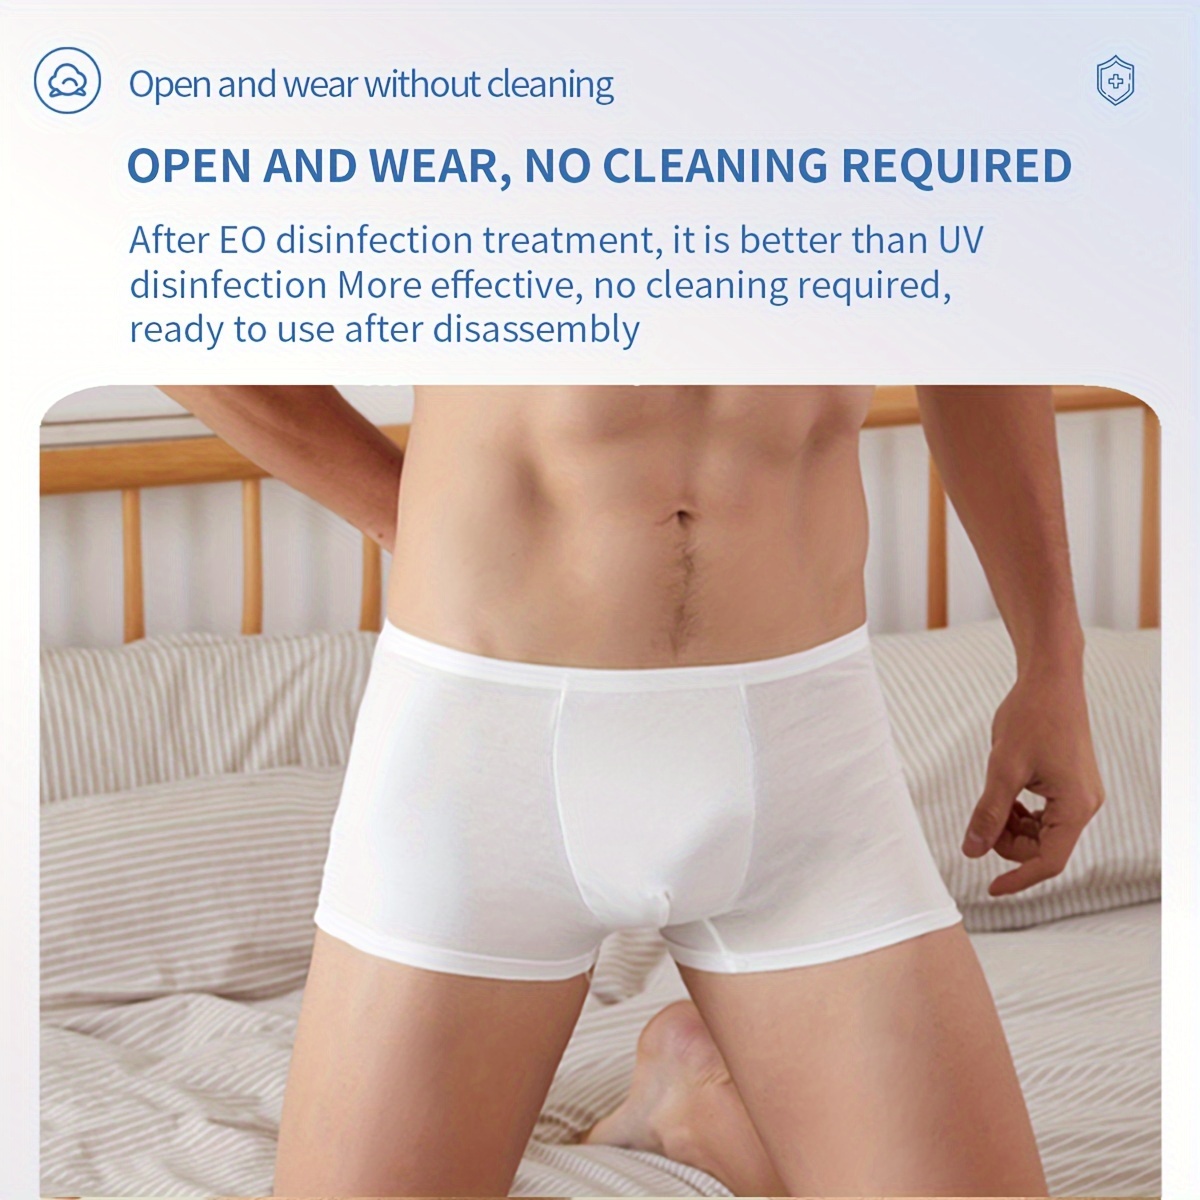 5PCS Disposable Underwear Men Women Travel Disposable Panties Men